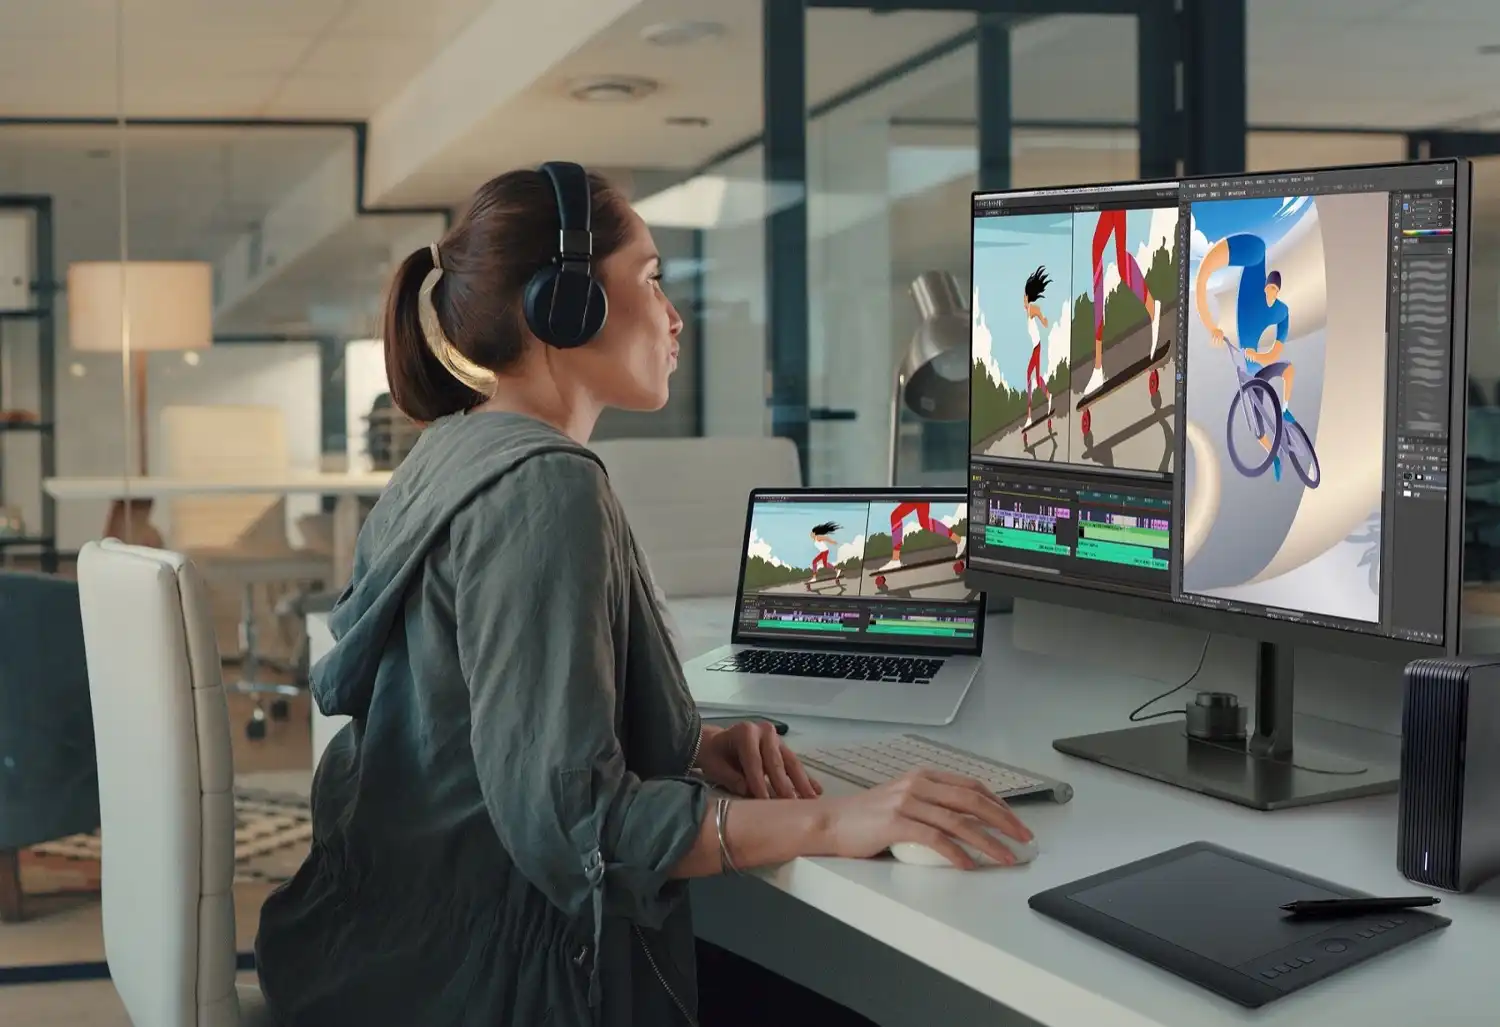 ViewSonic presenta monitores con tecnología ColorPro extendida